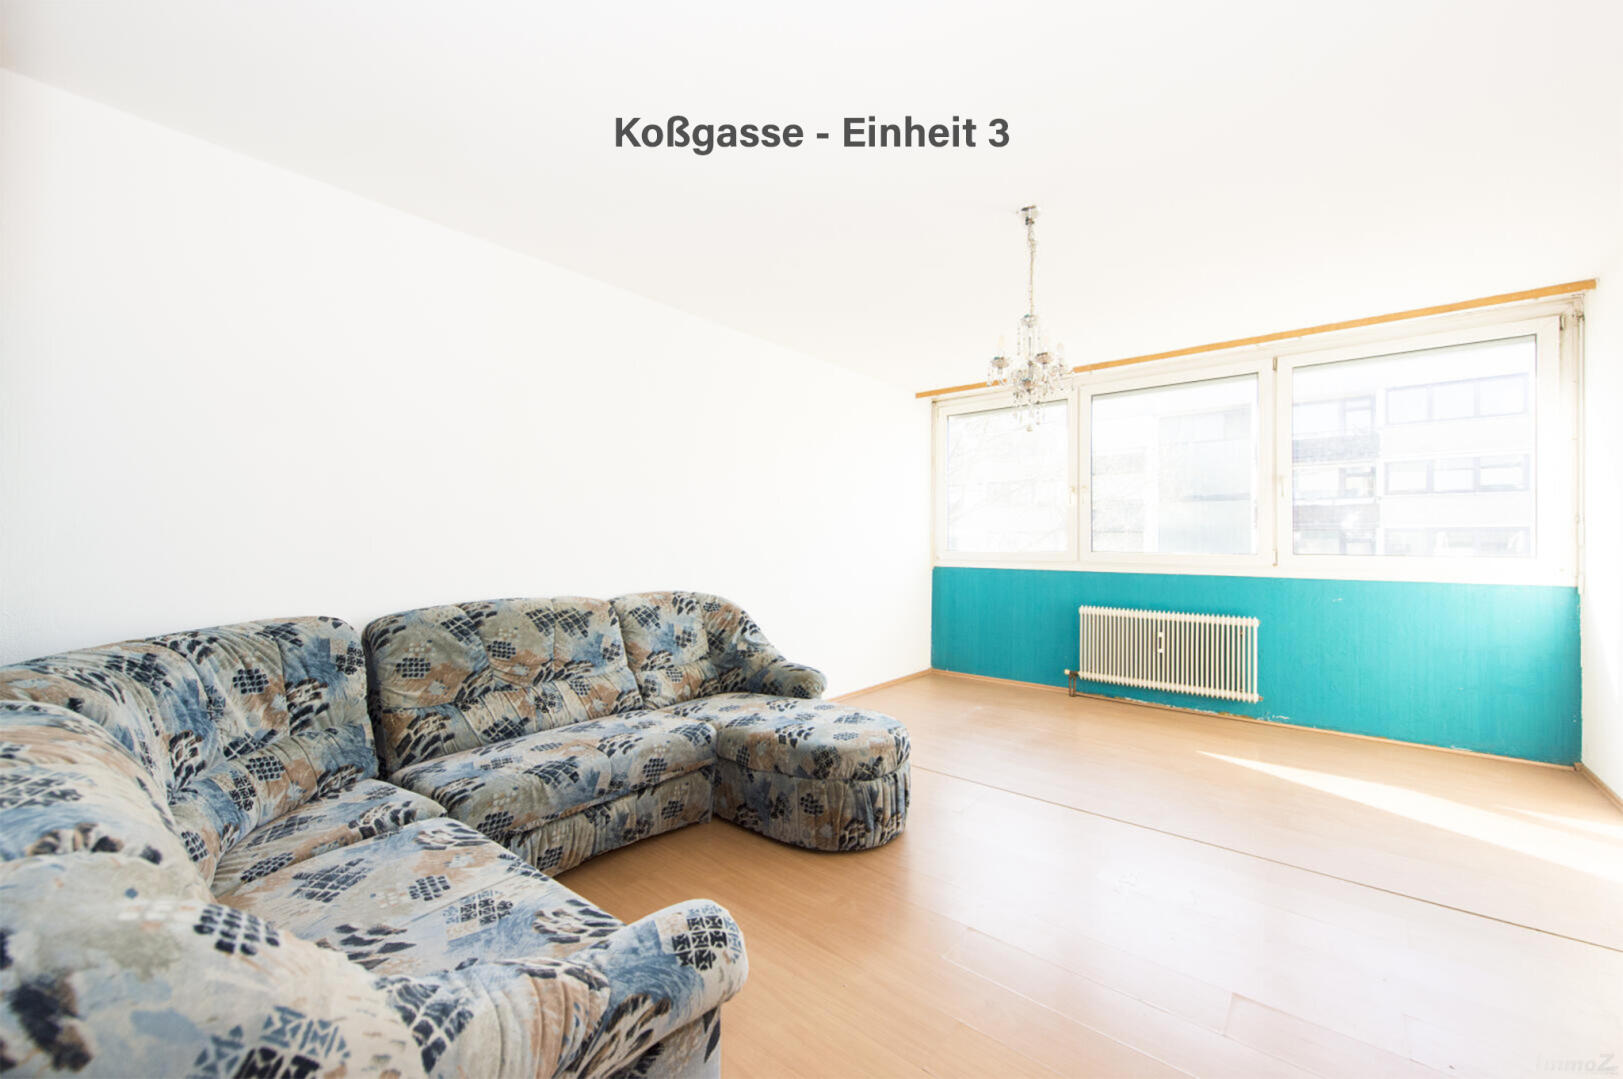 Wohnung zu kaufen: Koßgasse, 8010 Graz - Koßgasse - Einheit 3